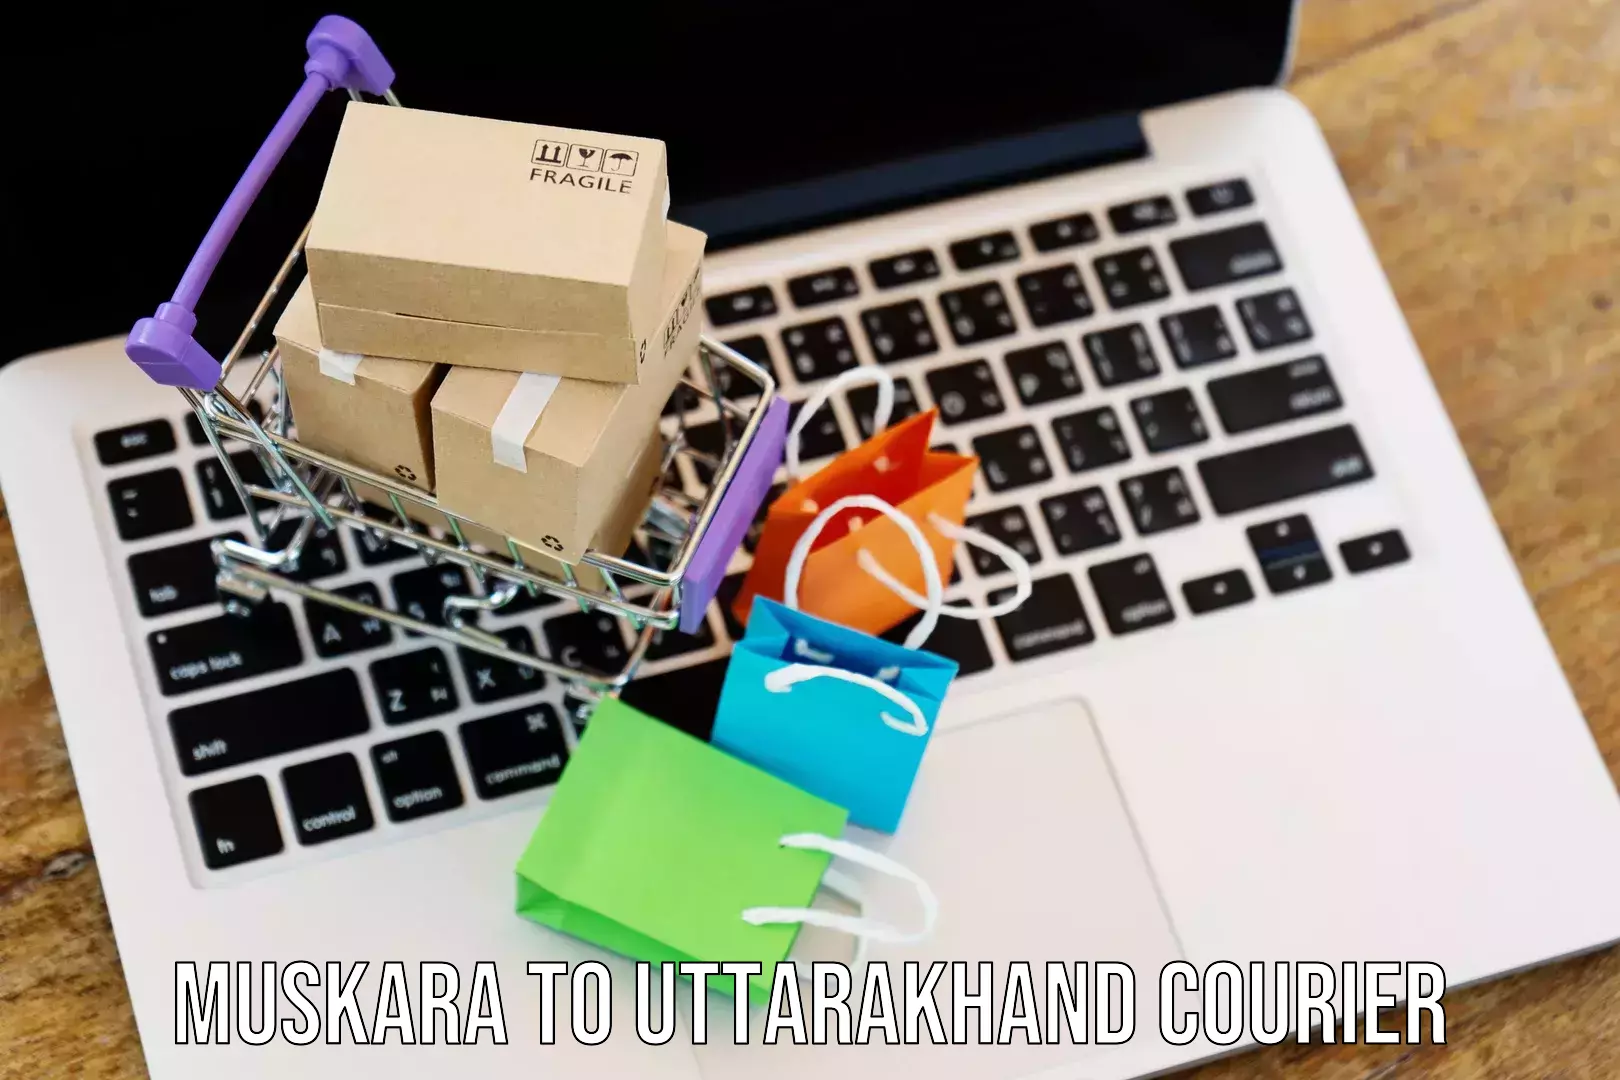 Efficient parcel tracking Muskara to Uttarakhand